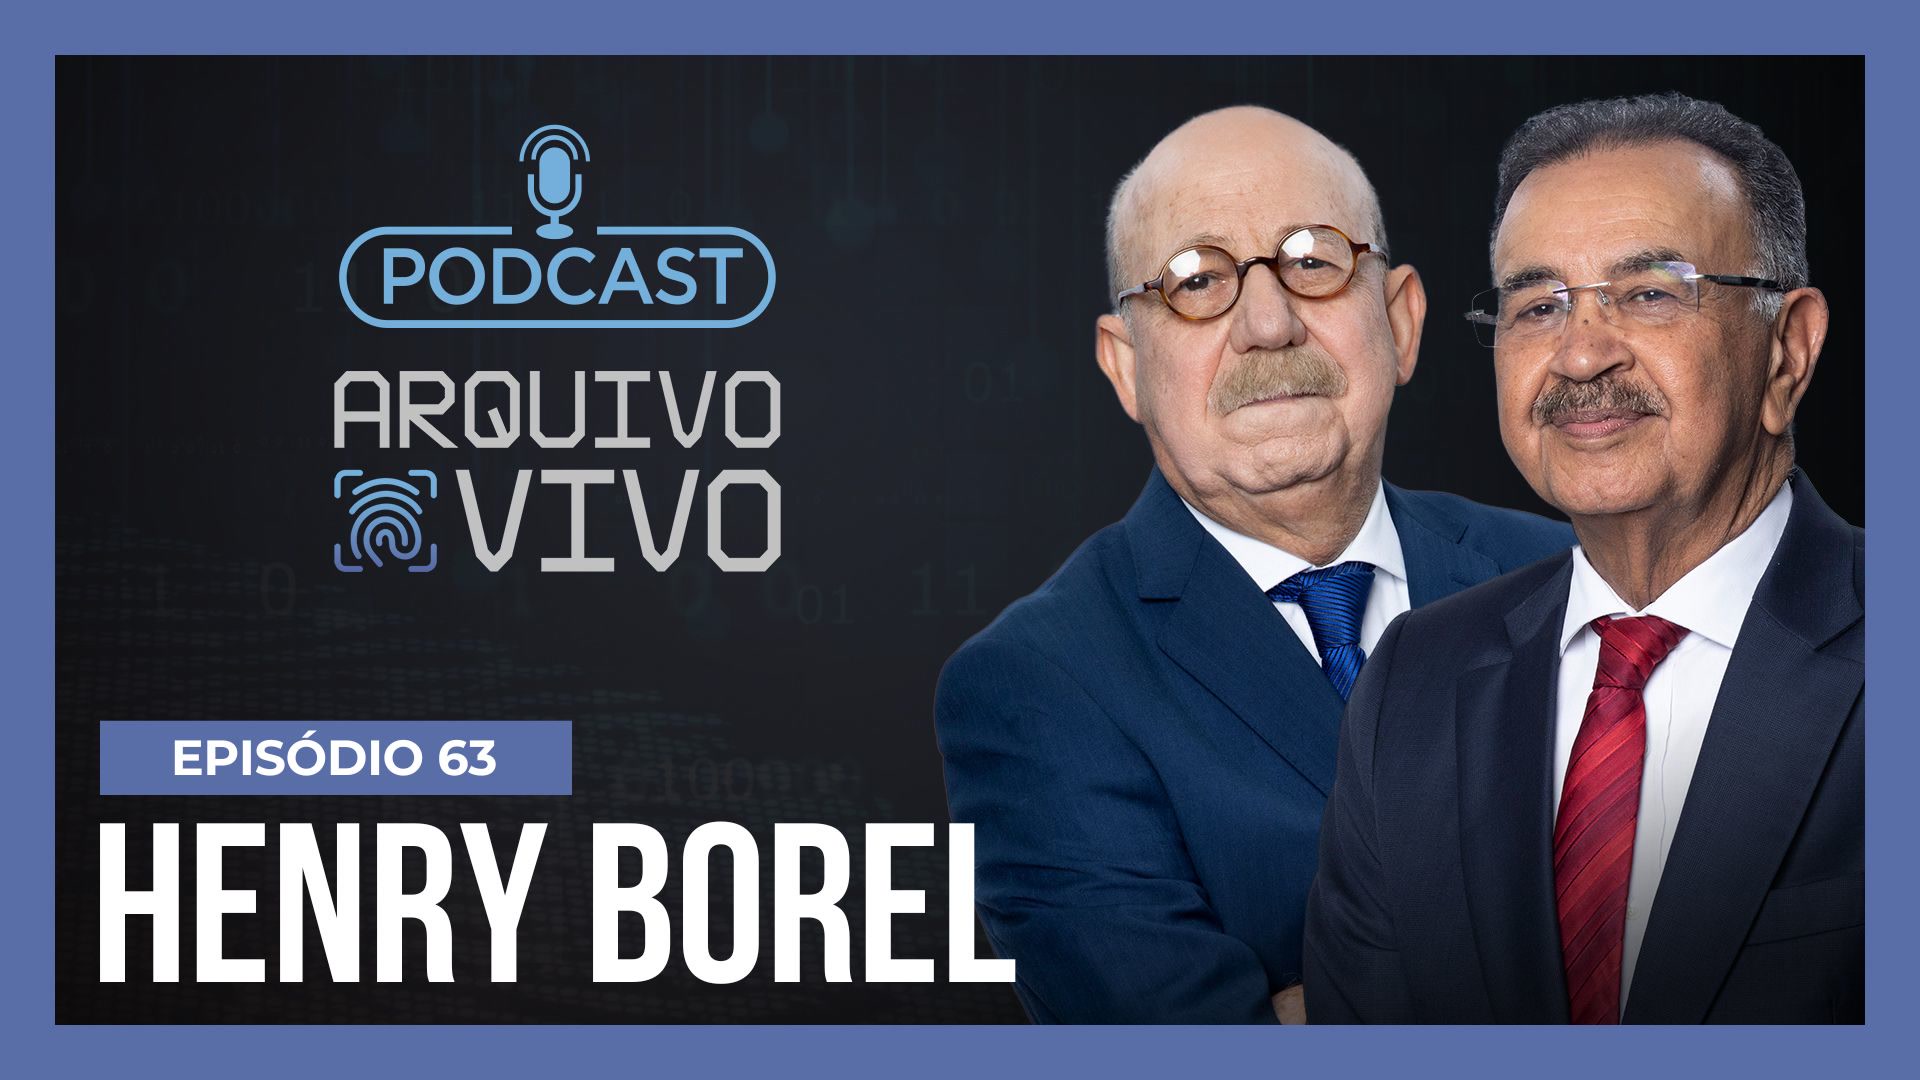 Vídeo: Podcast Arquivo Vivo : A morte do menino Henry Borel | Ep. 63